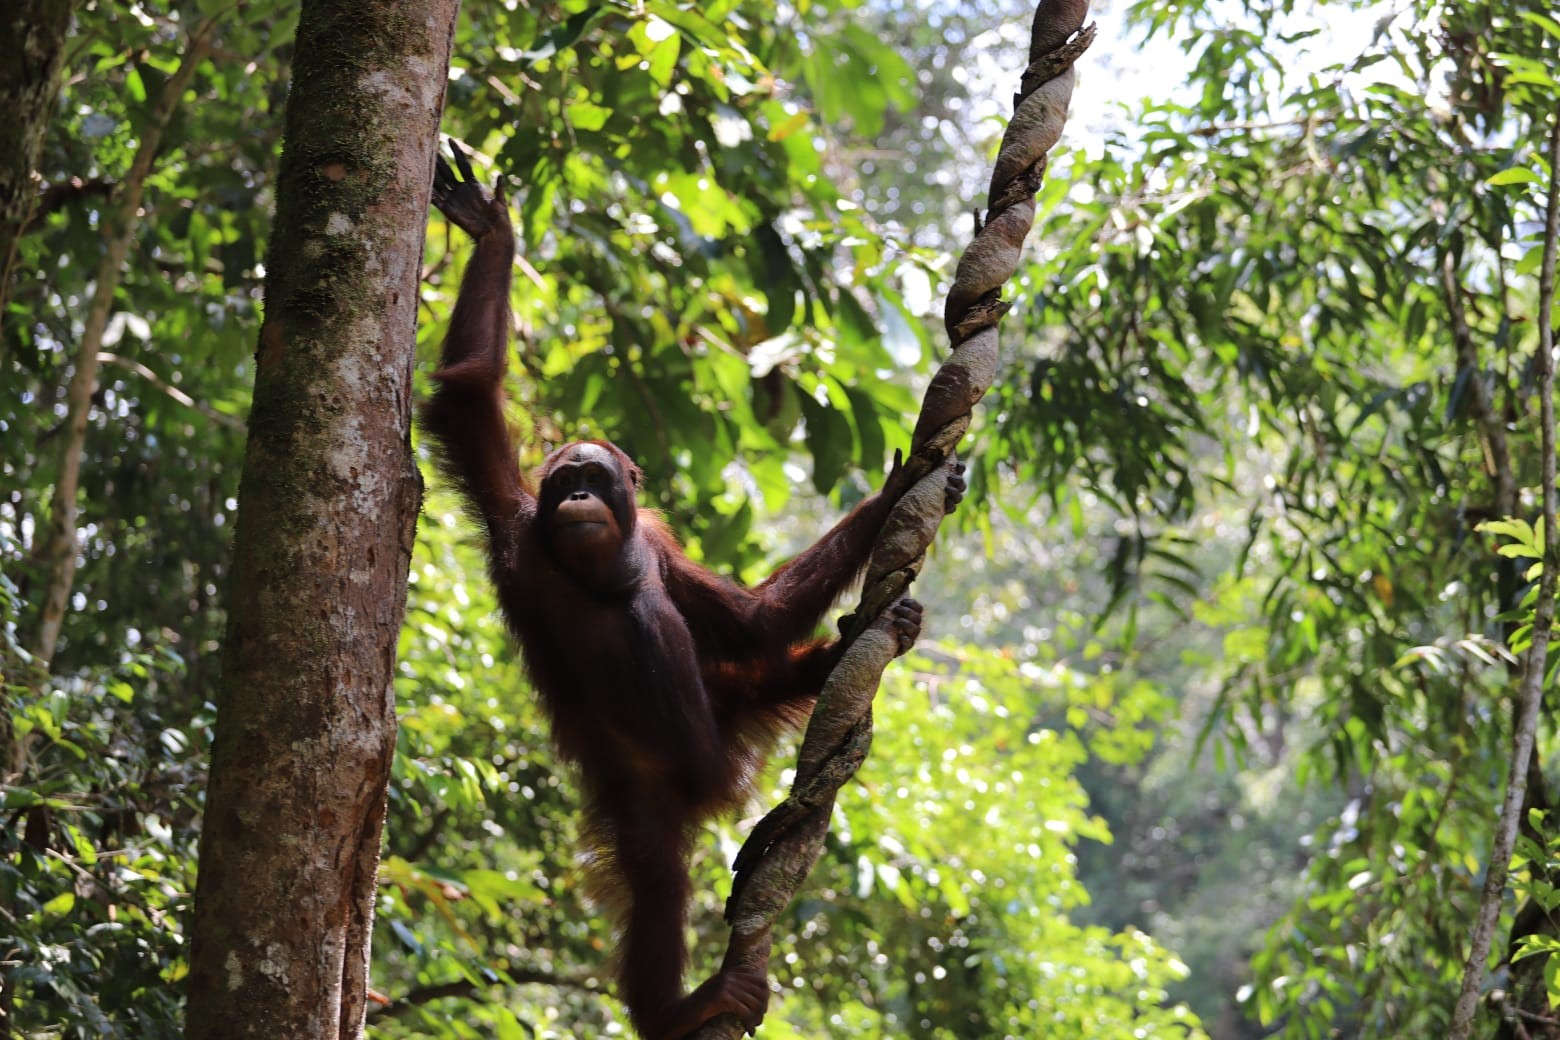 Pelepasliarkan orangutan di Balai Besar Taman Nasional Betung Kerihun dan Danau Sentarum